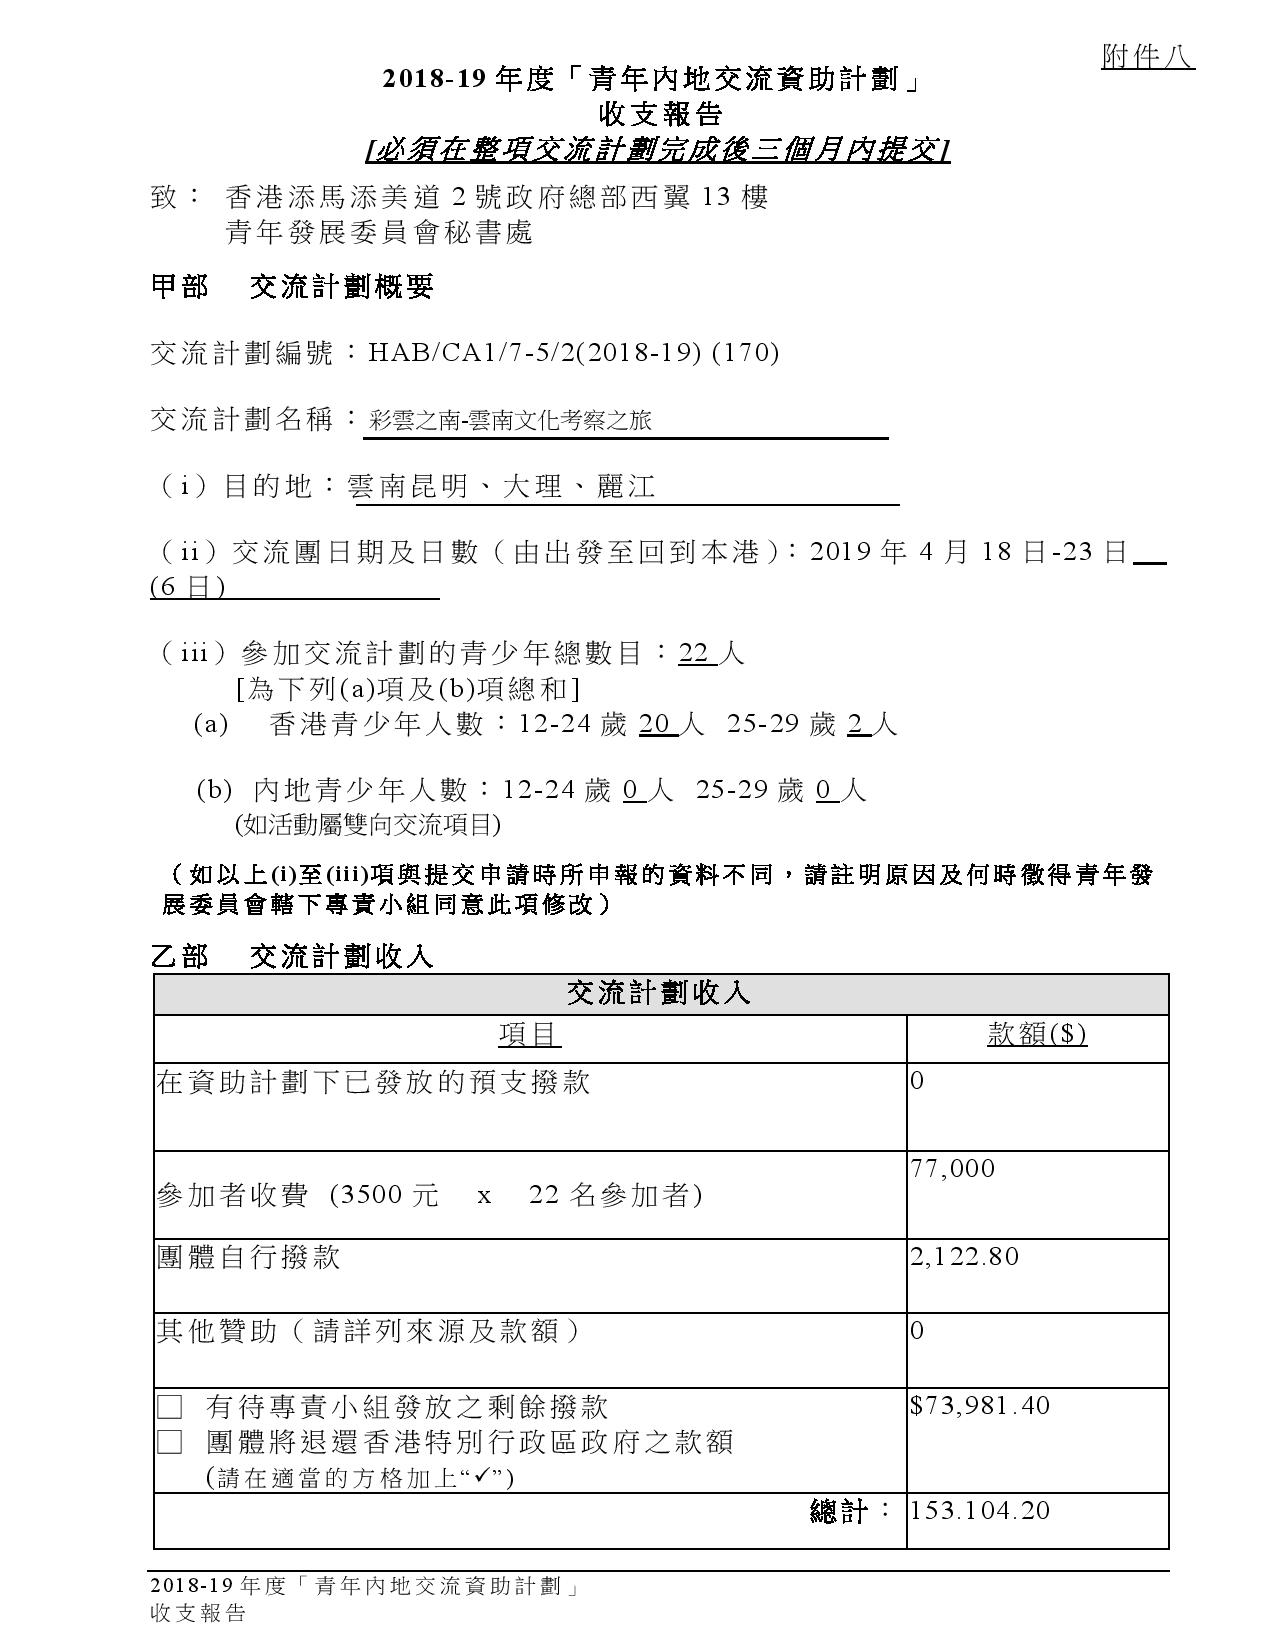 HKCFA_雲南團_附件八 - 收支報告-page-001(P,1).jpg